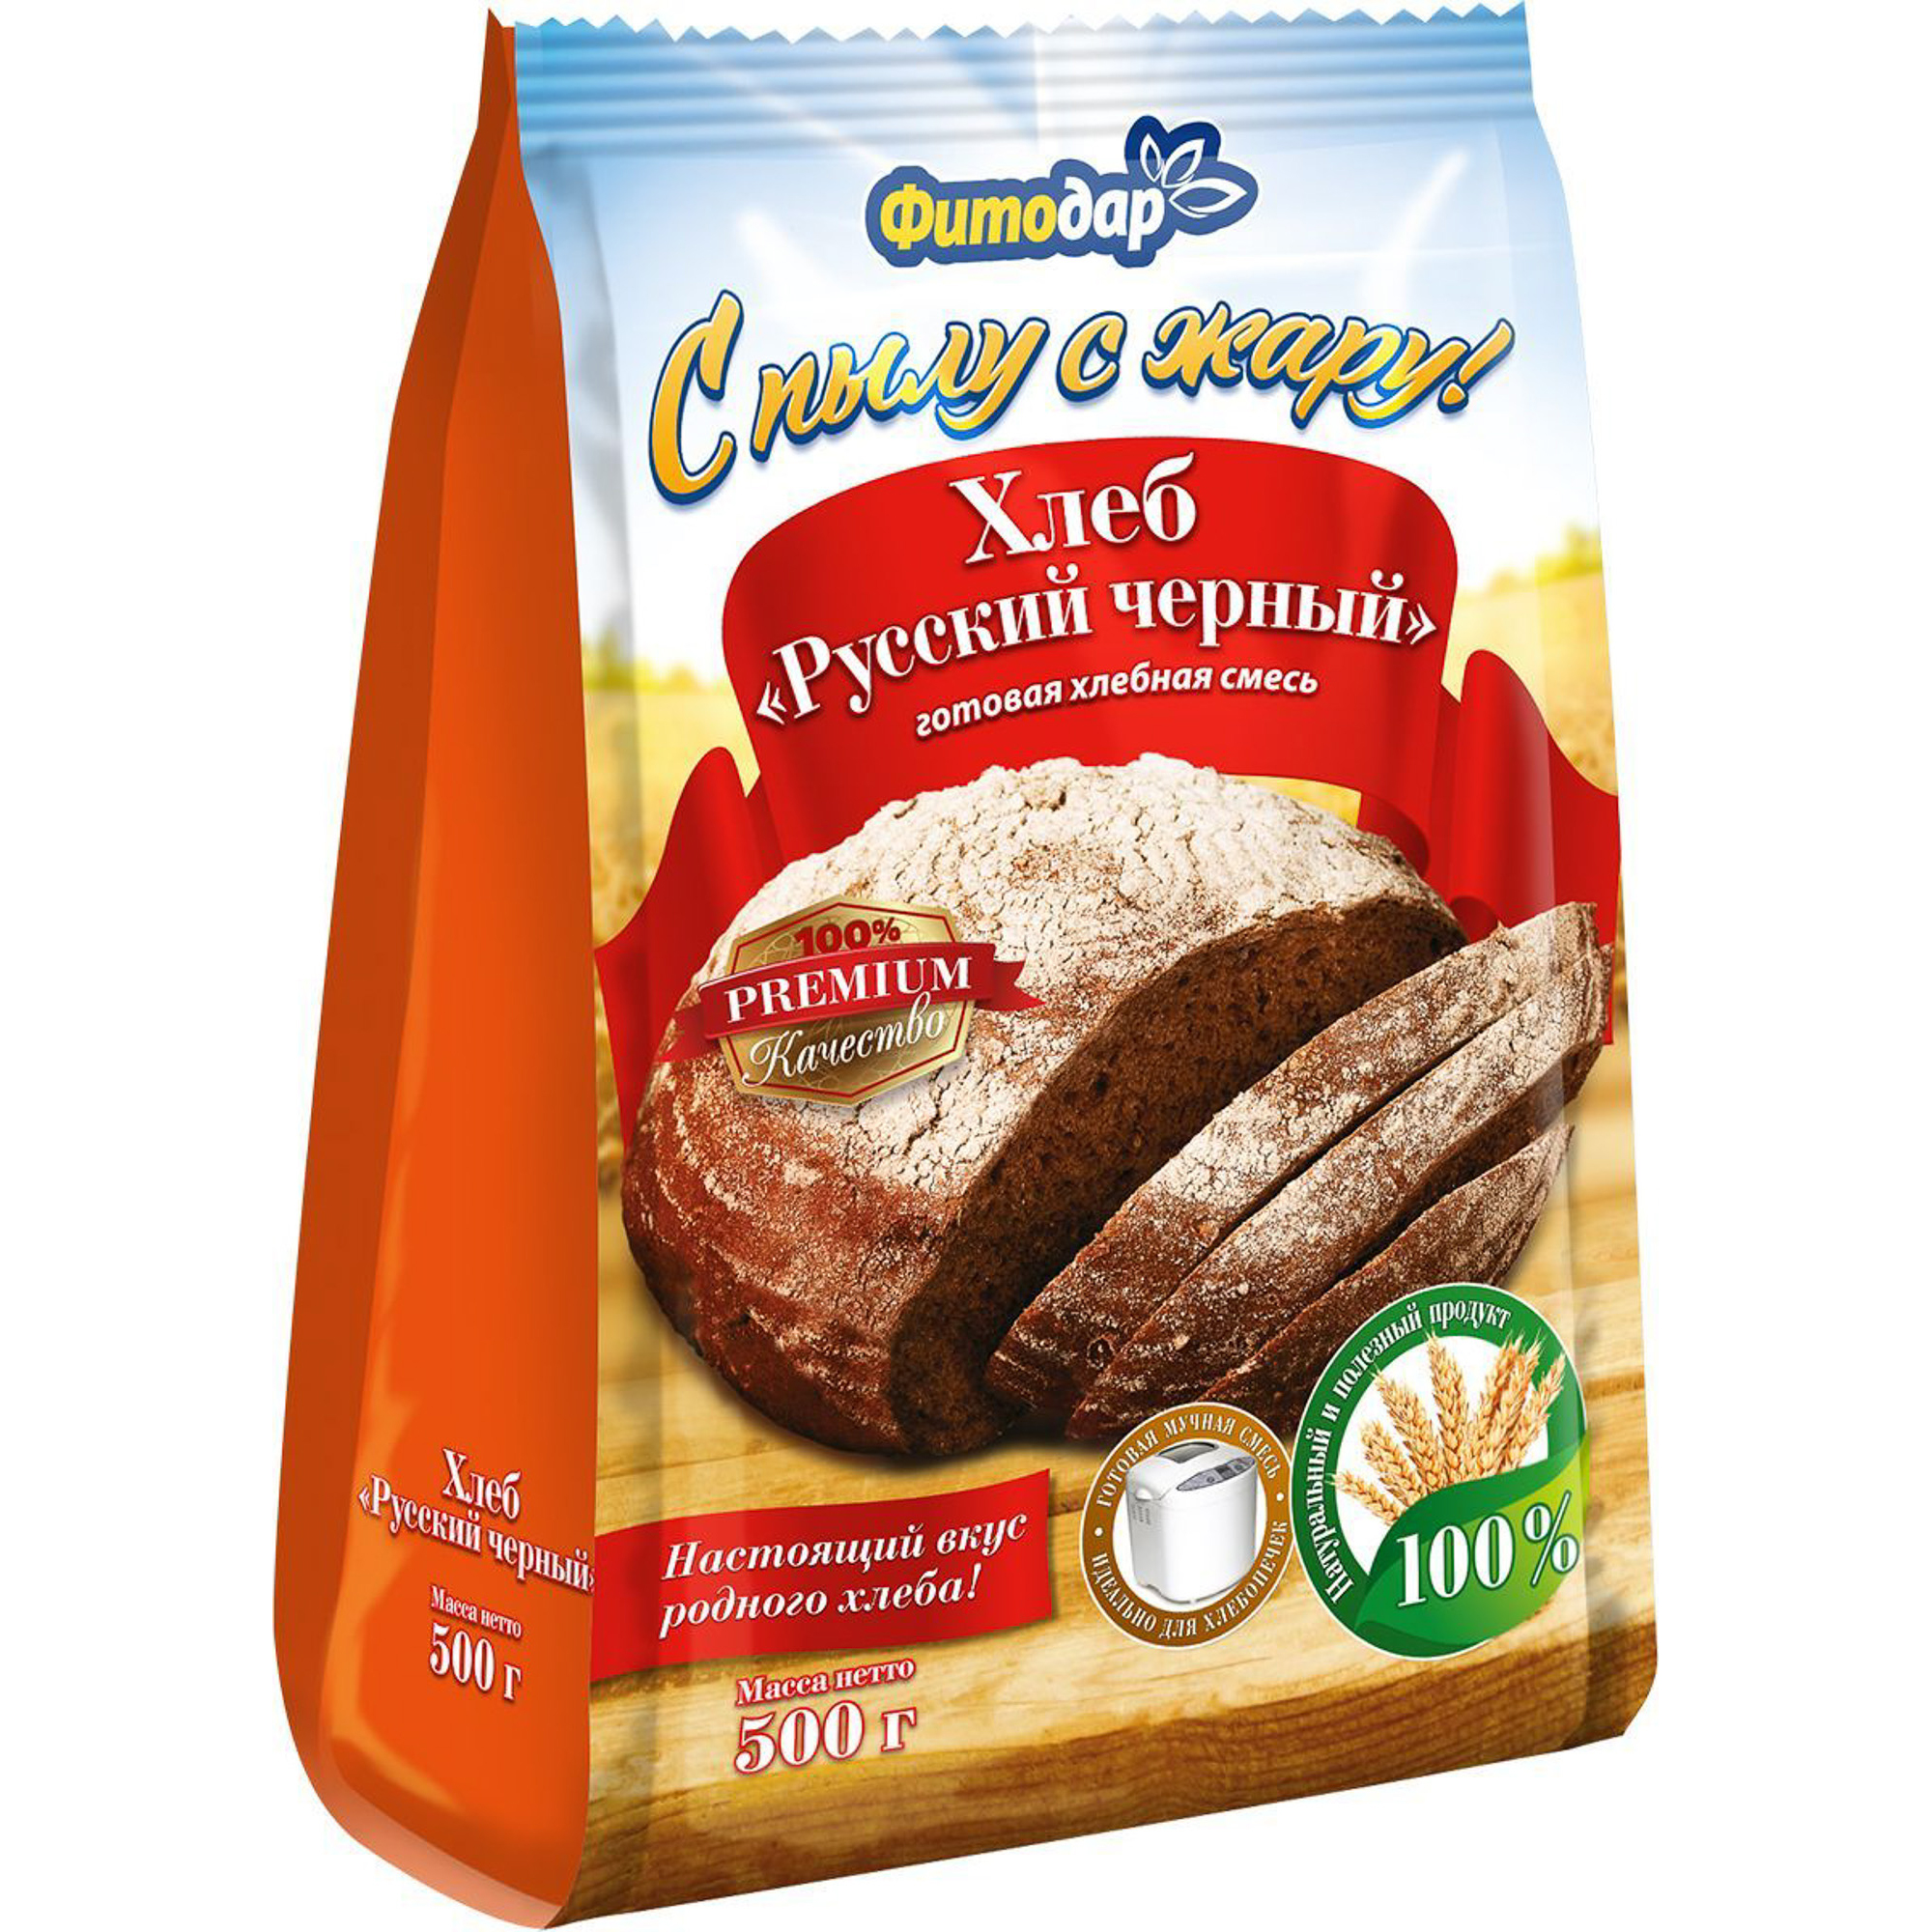 Хлебная смесь Фитодар хлеб русский черный 500 г - фото 1